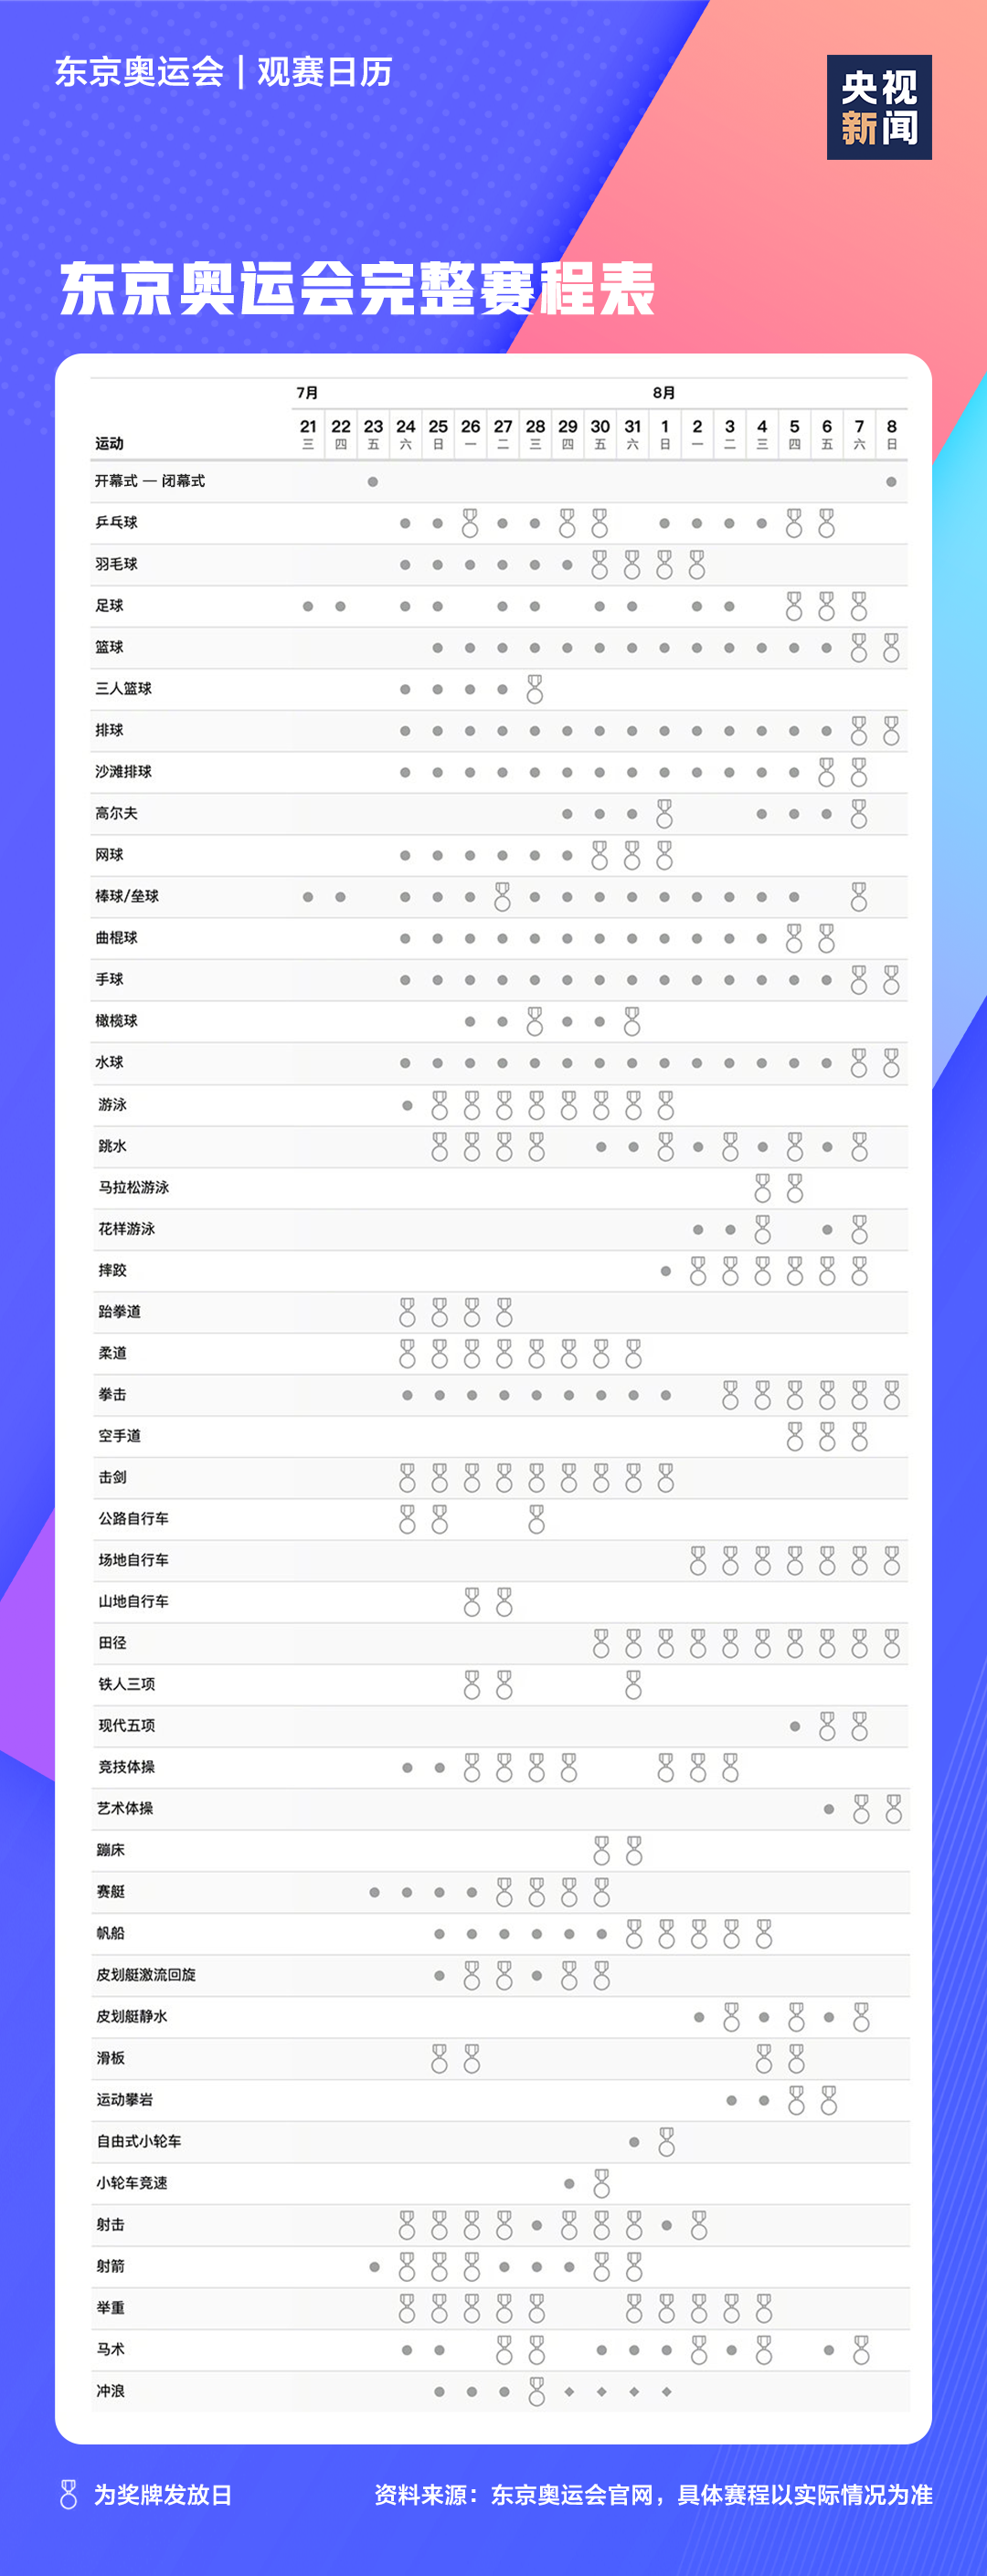 2021东京奥运会时间表,东京奥运会各项赛事赛程日历